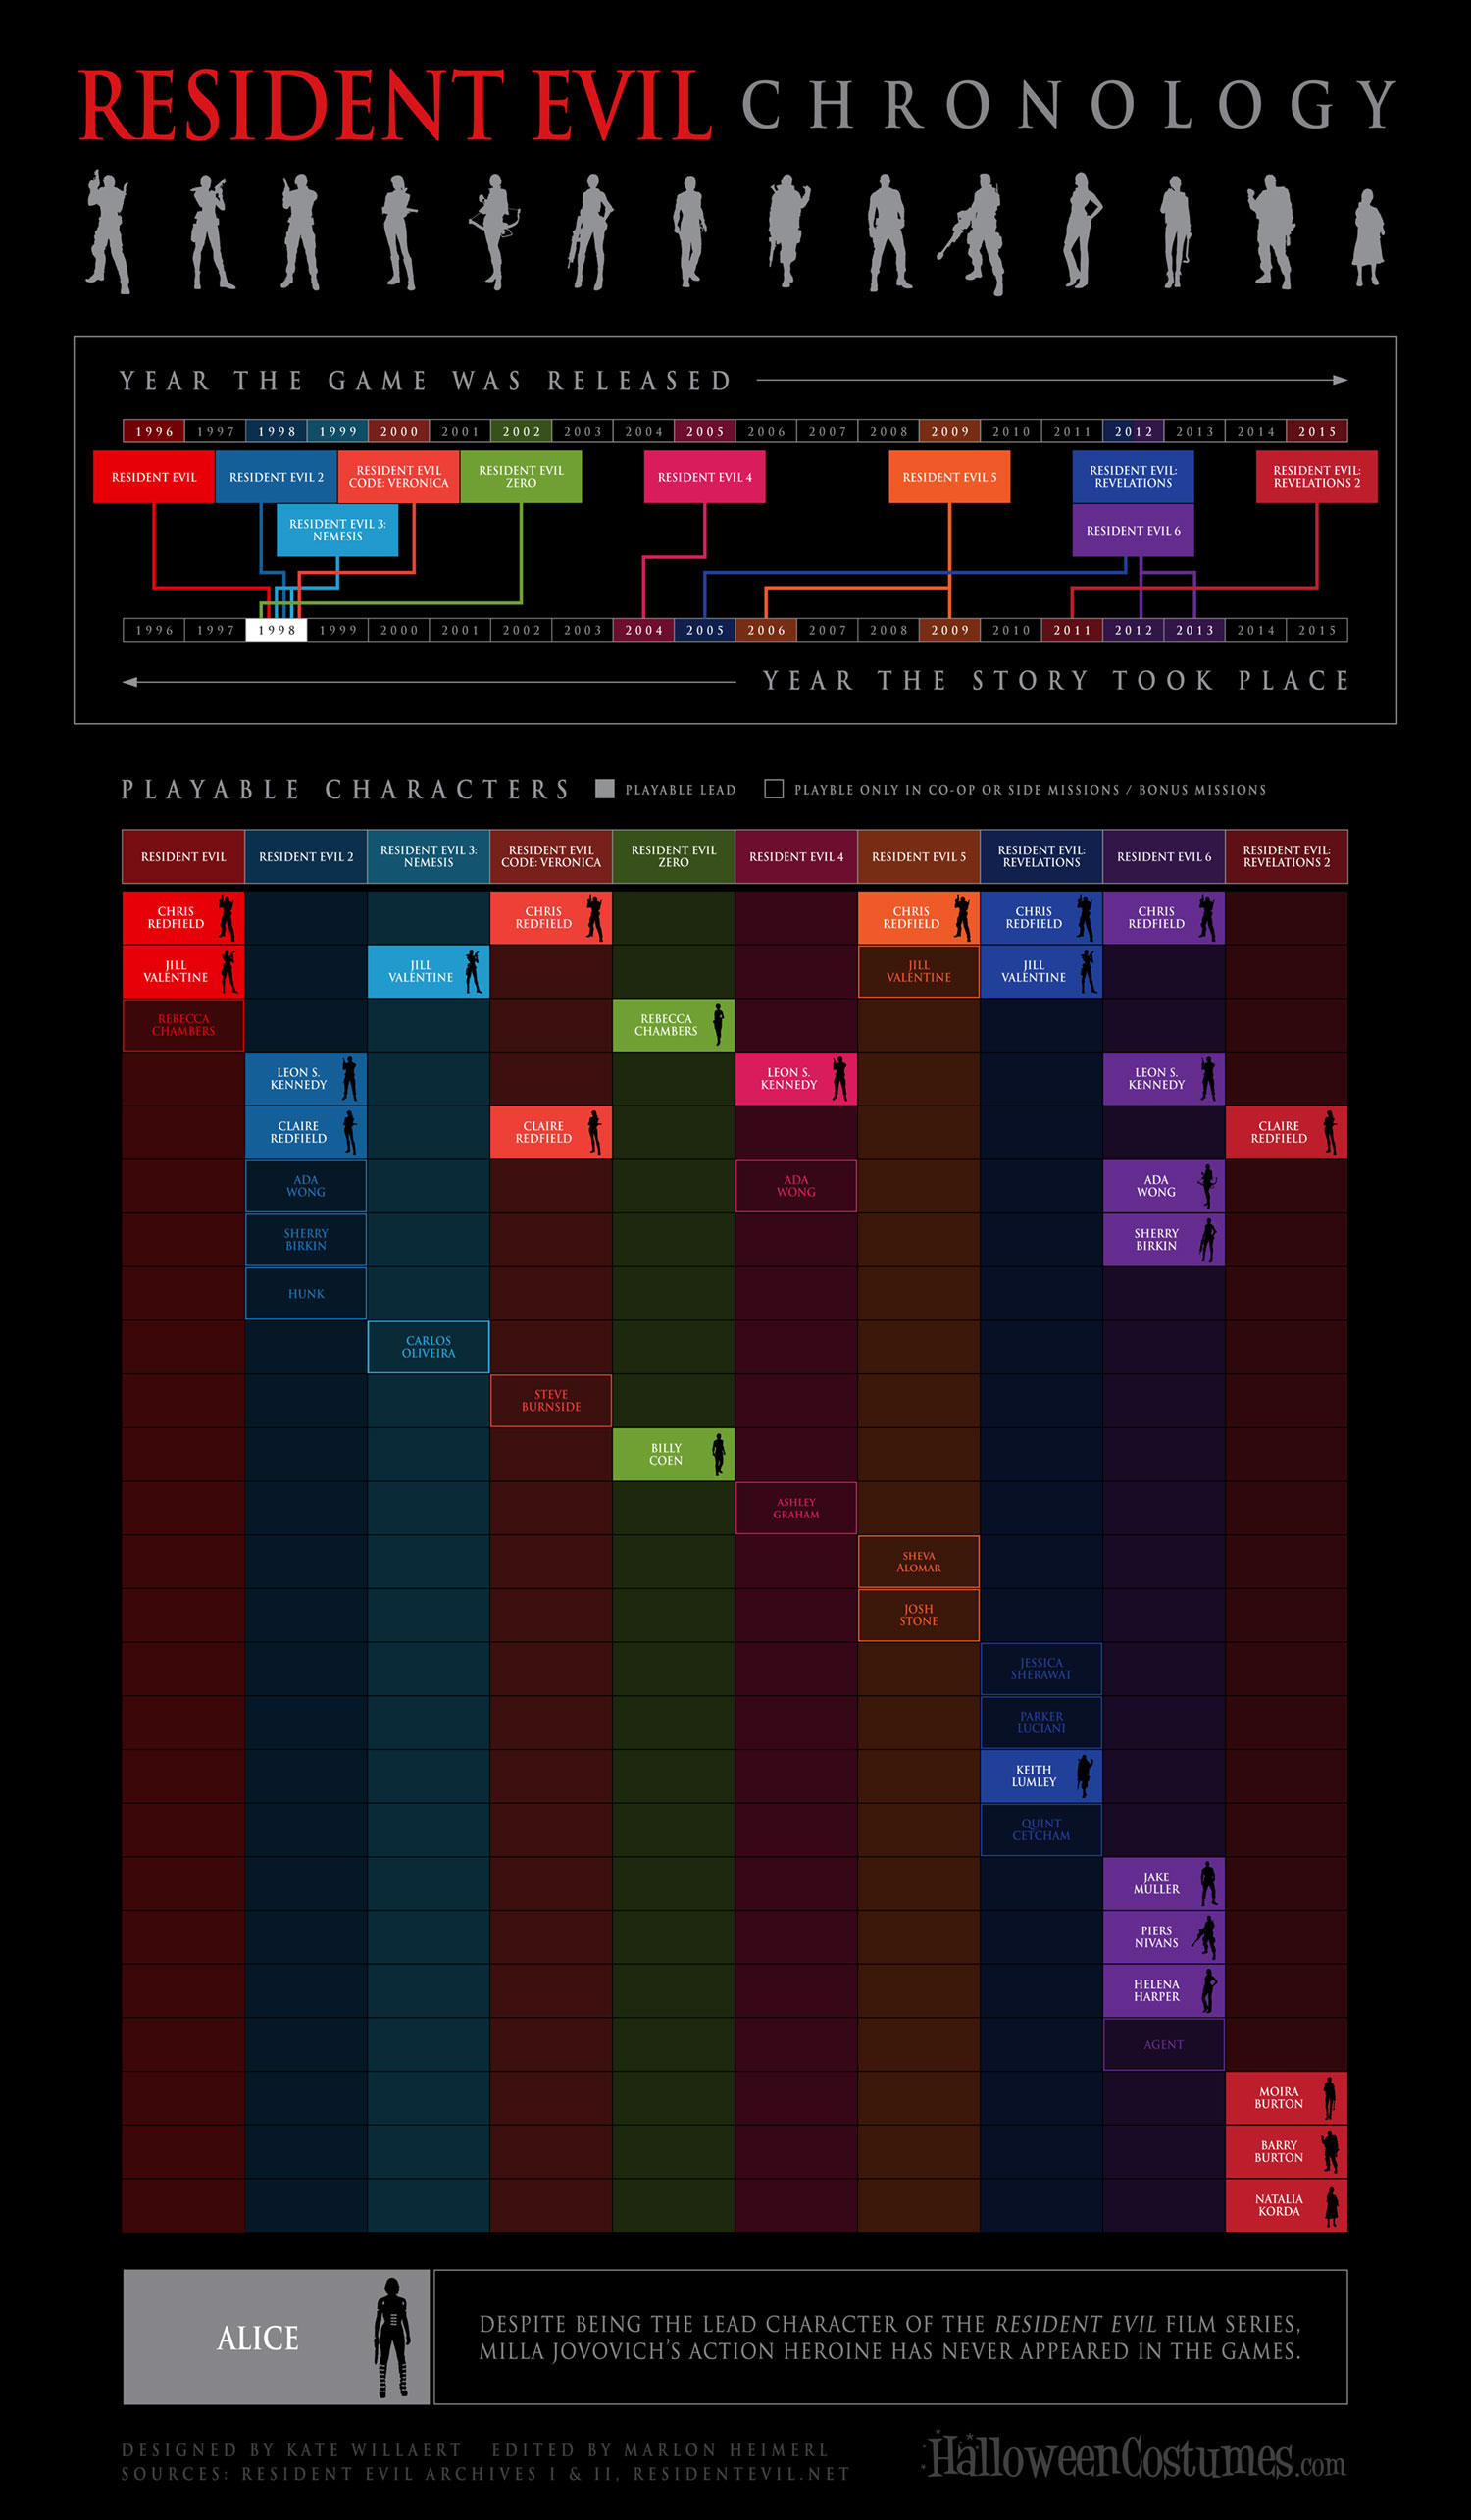 Resident Evil Chronology Infographic